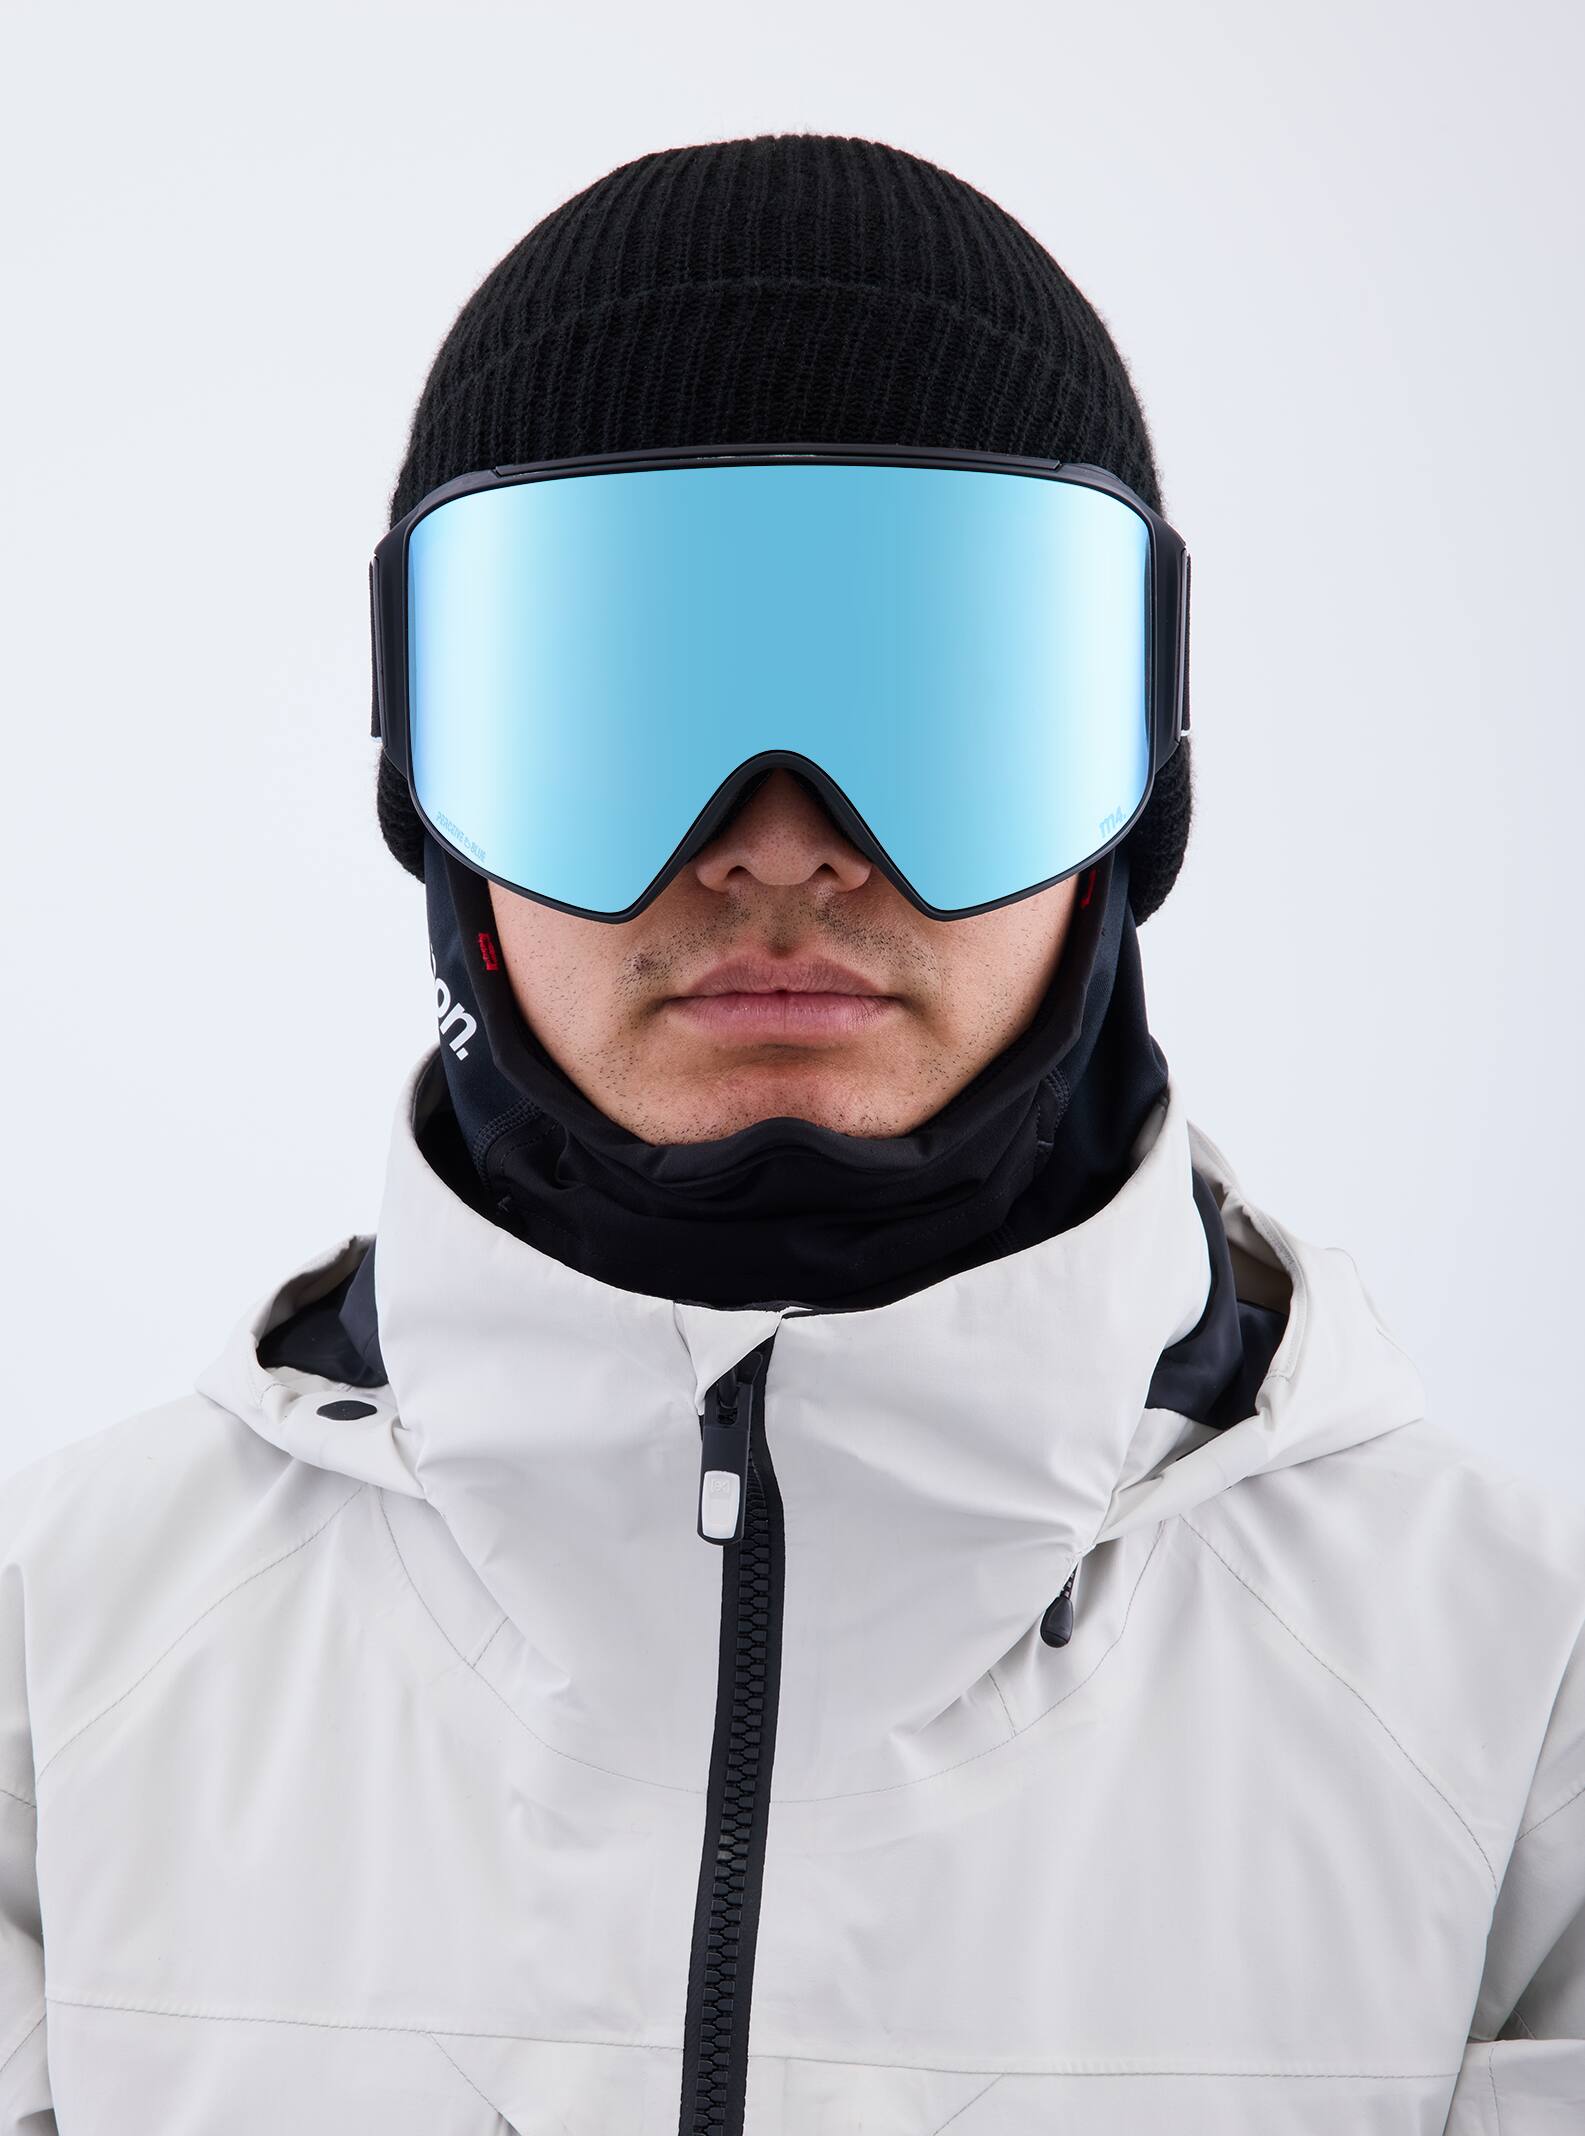 Magna-Tech®ゴーグル&レンズ | スキー&スノーボード ゴーグル | Anon 